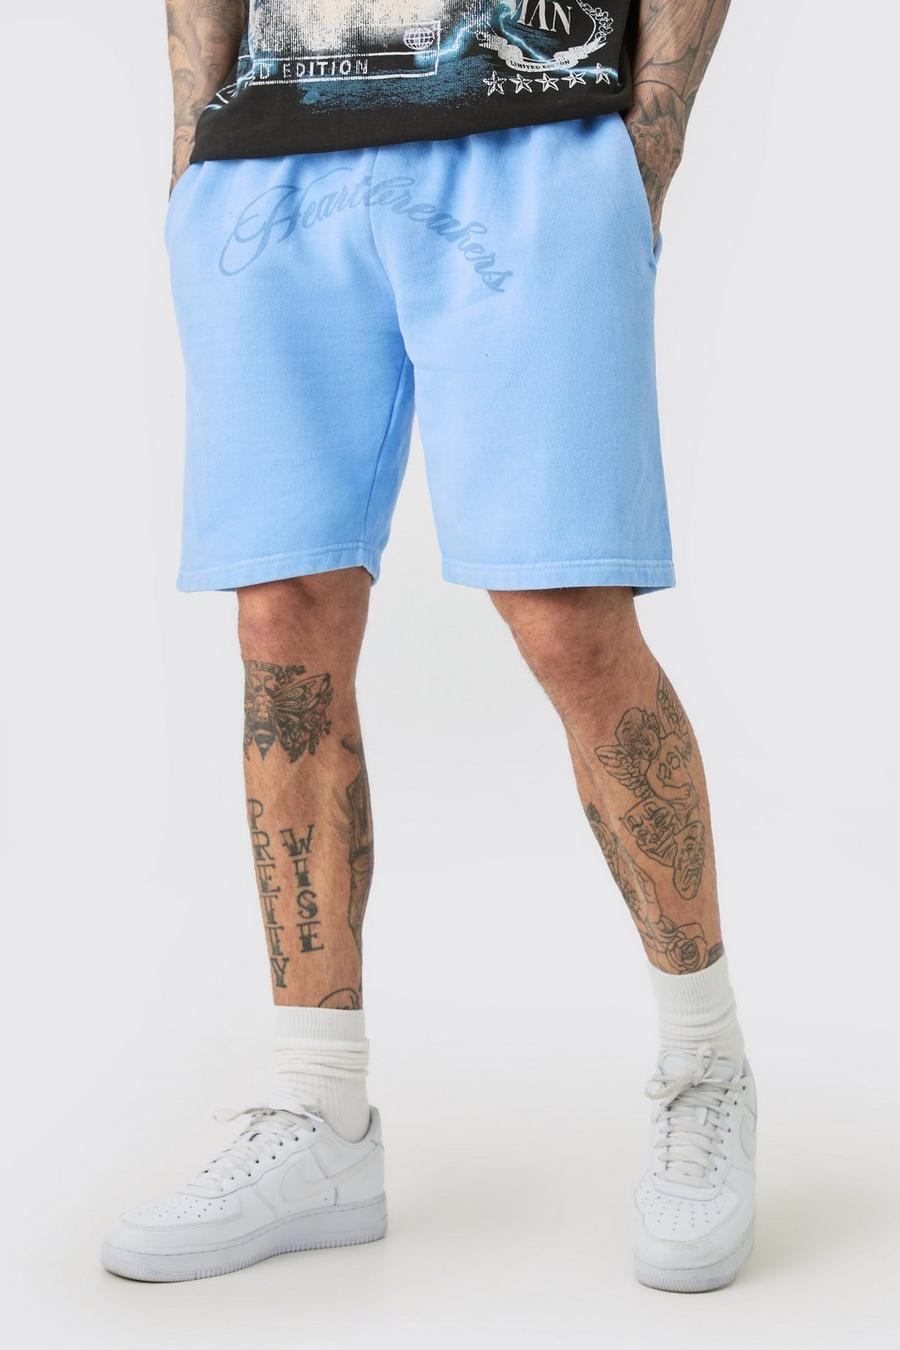 Pantalones cortos Tall oversize azules con estampado de Hearbreakers, Blue